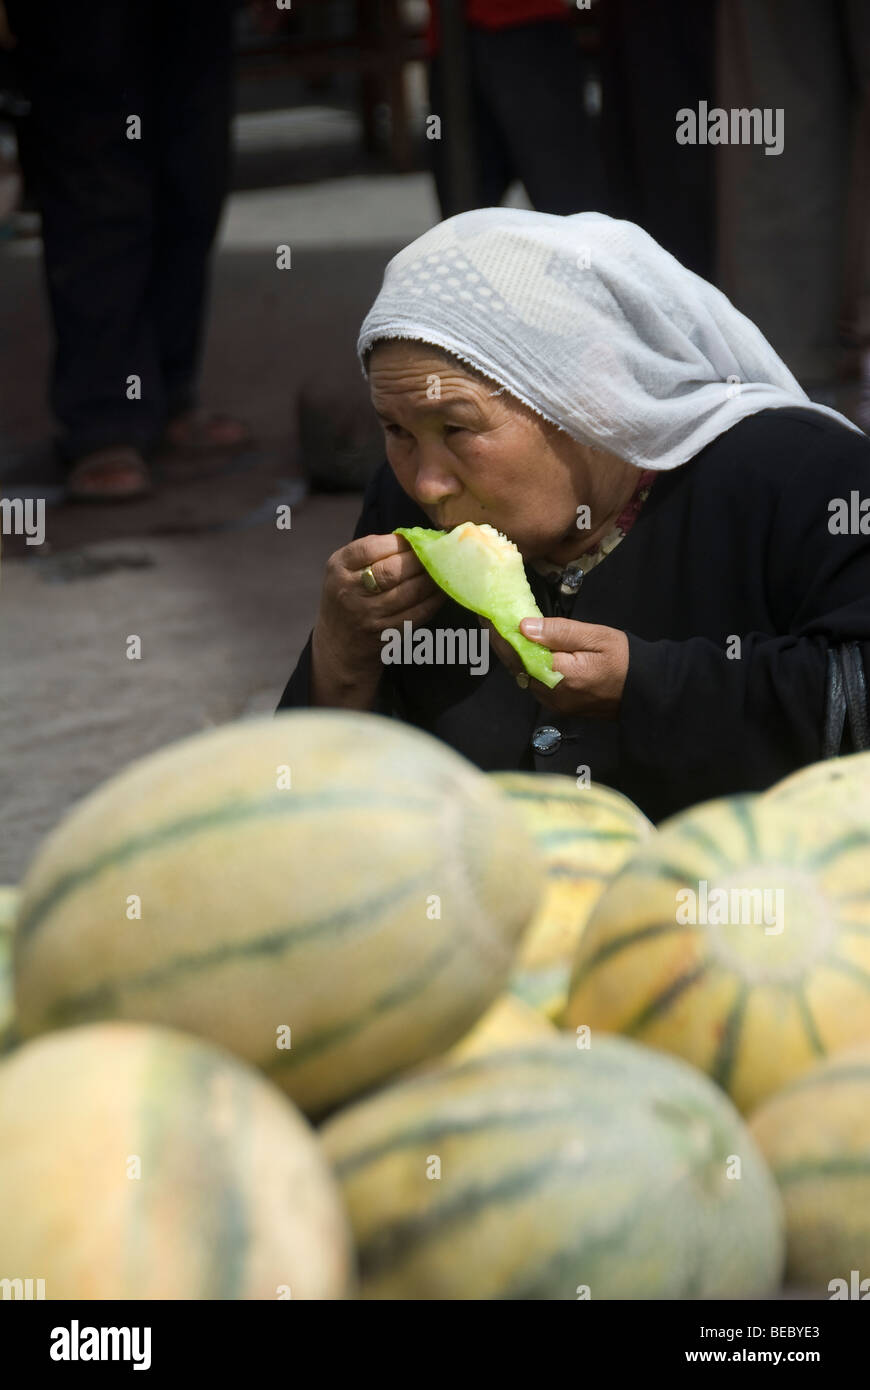 Muslim woman eating melon in a market of Kashgar, Xinjiang province, China. Stock Photo